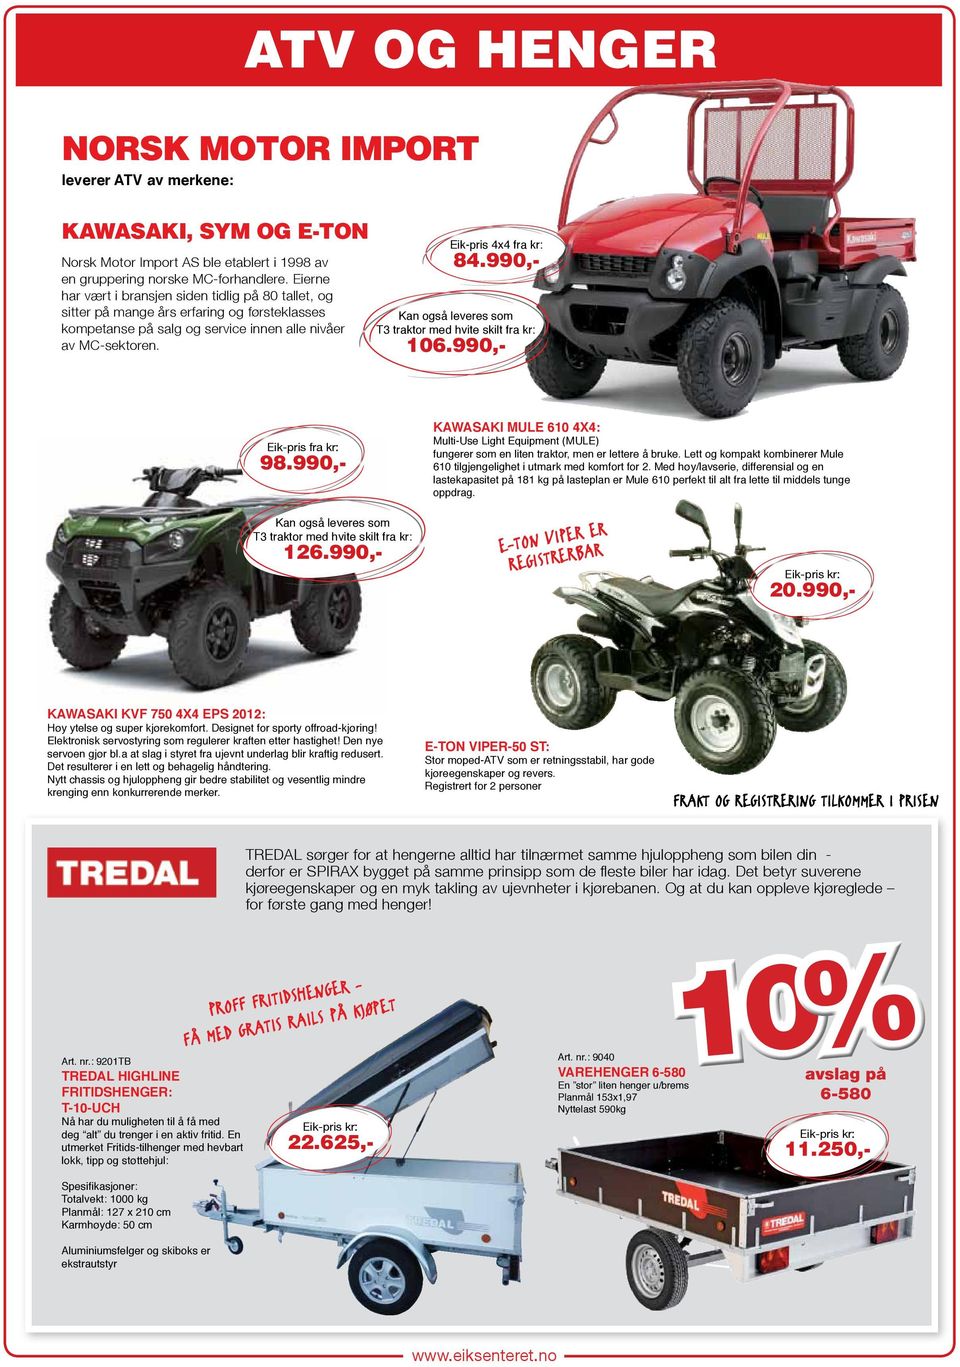 990,- Kan også leveres som T3 traktor med hvite skilt fra kr: 106.990,- Eik-pris fra kr: 98.